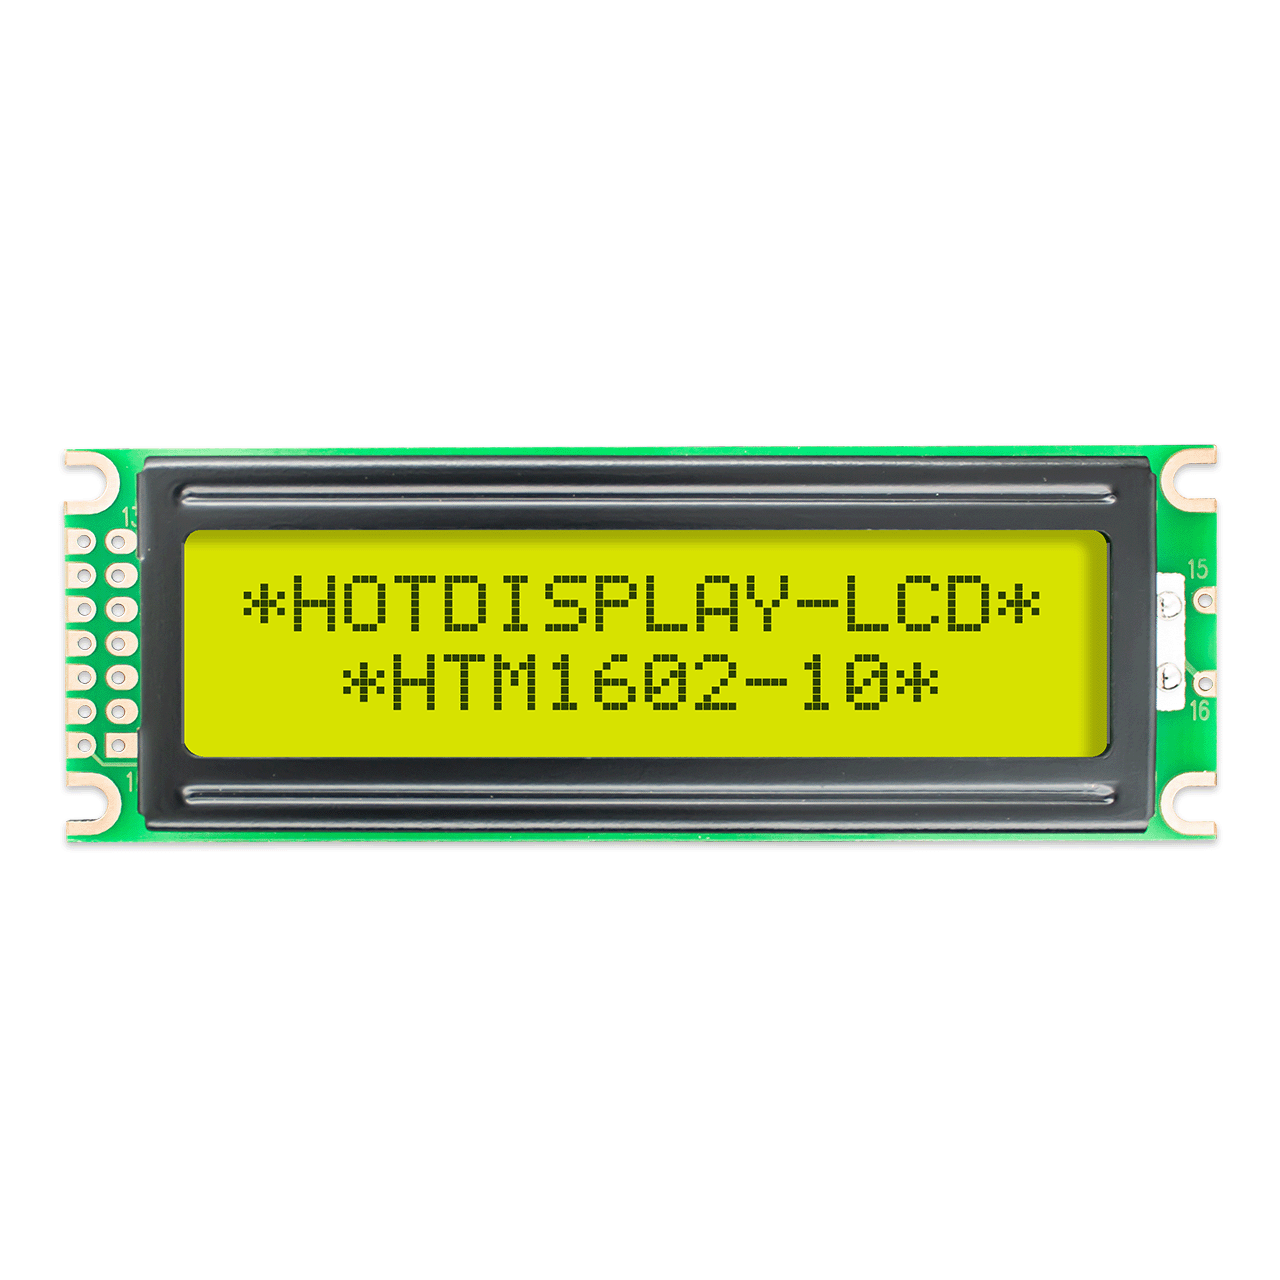  2x16字符液晶显示模组 STN+ 灰色显示屏，带黄/绿背光 Arduino显示屏